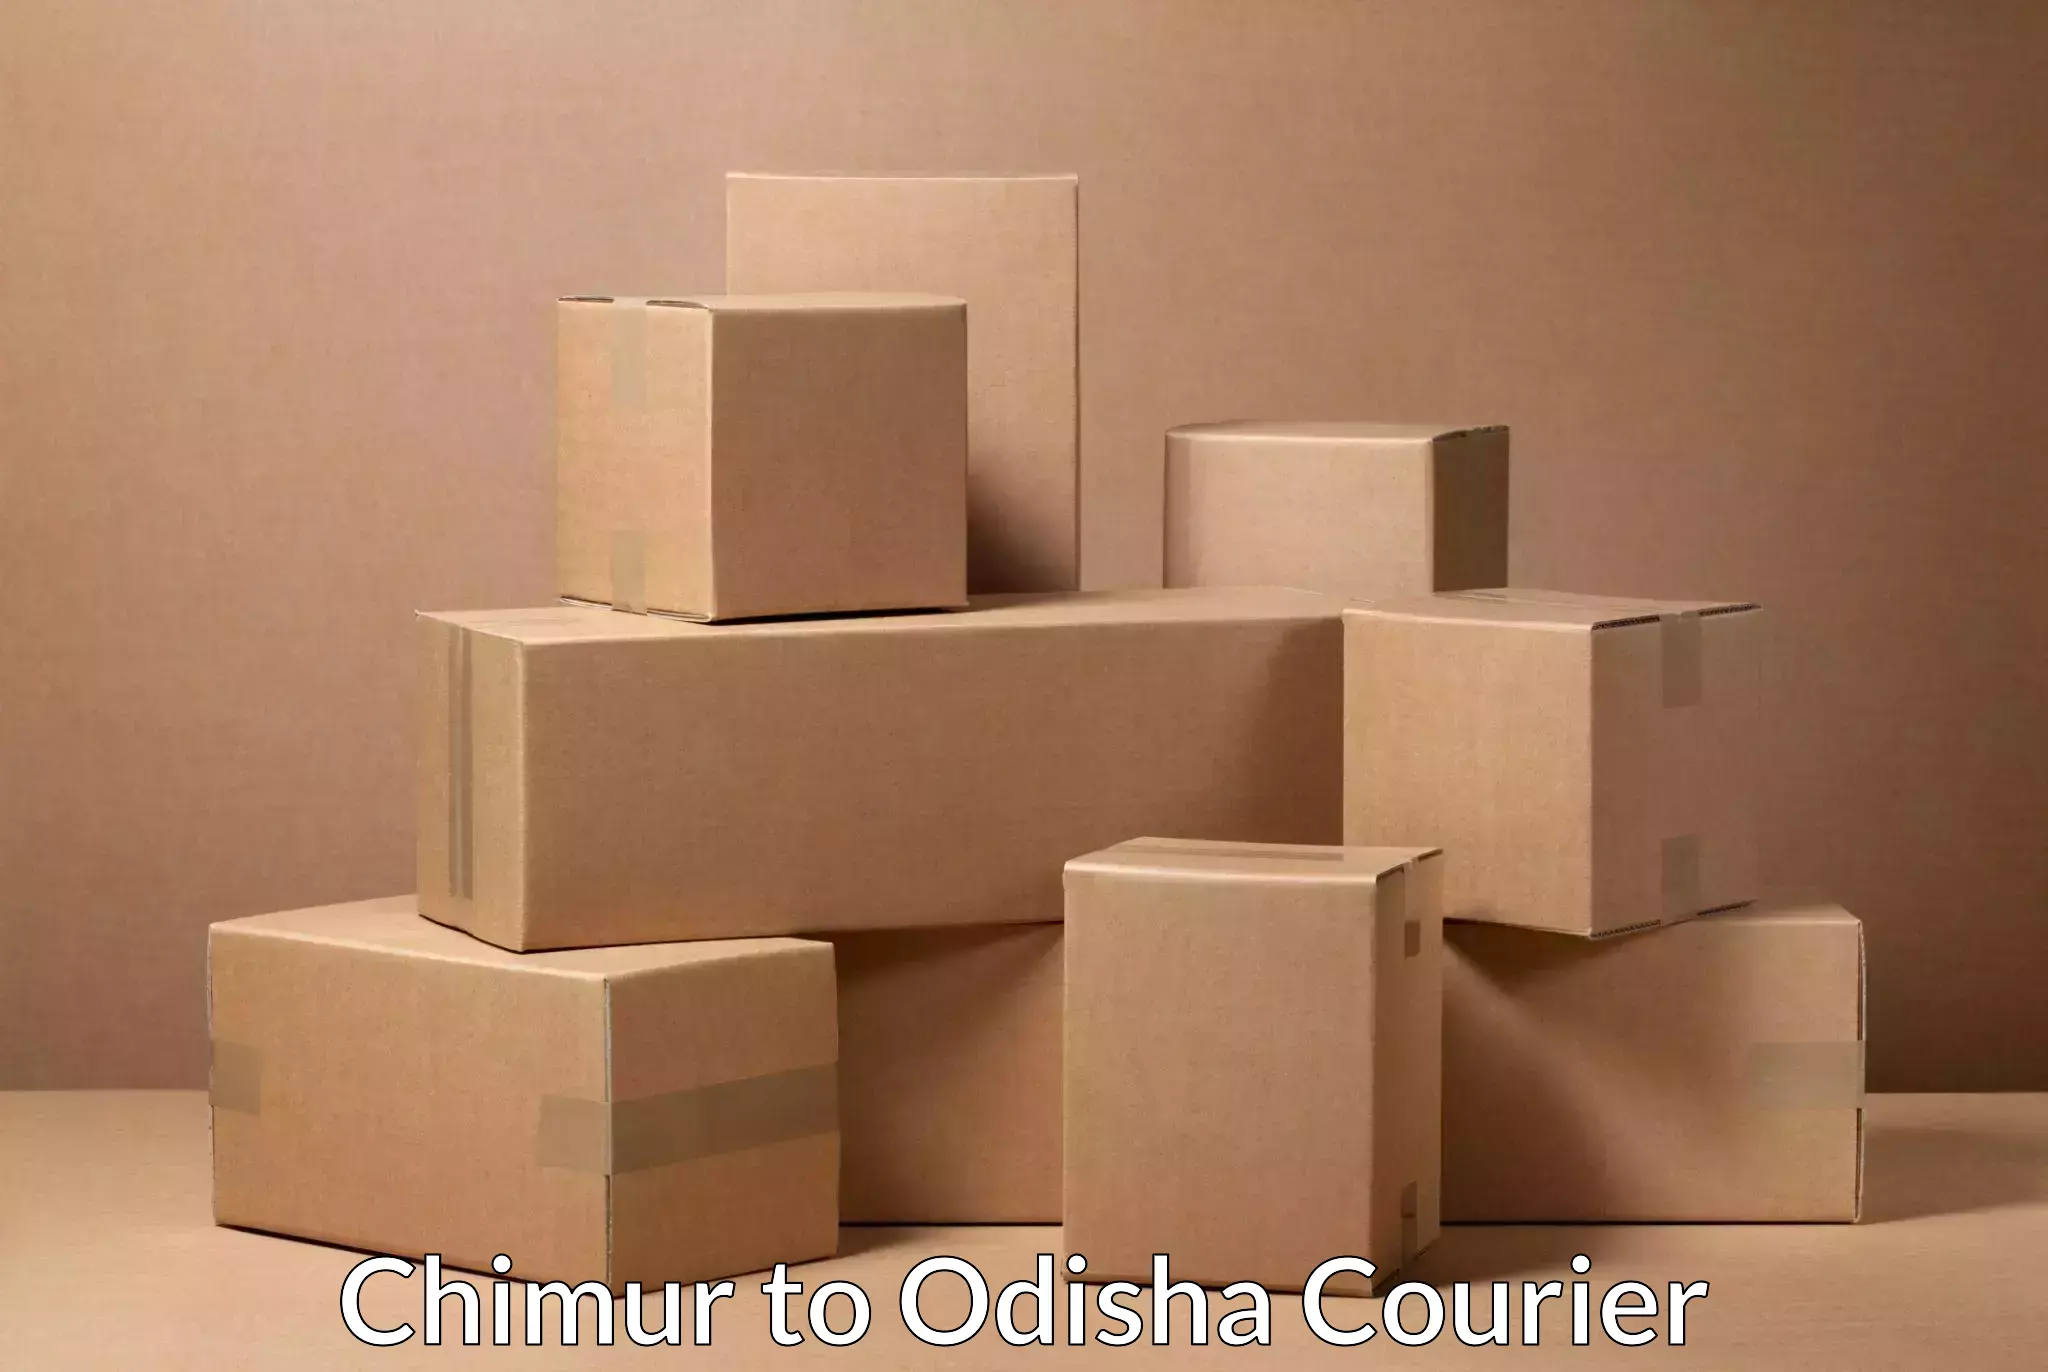 Efficient parcel transport Chimur to Rairangpur